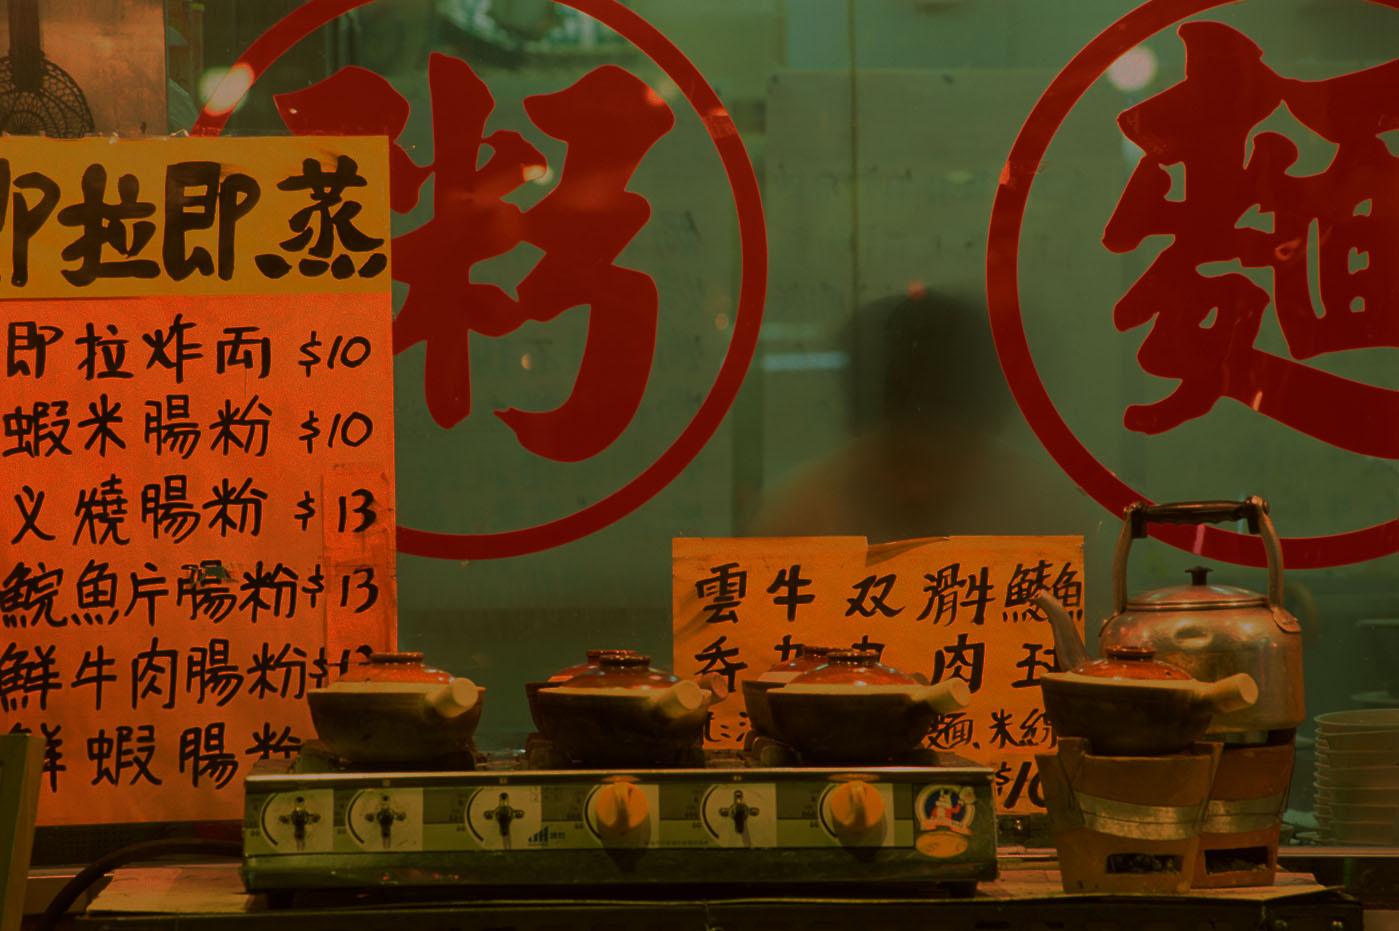 Chinesisches Restaurant mit Schildern auf Chinesisch.